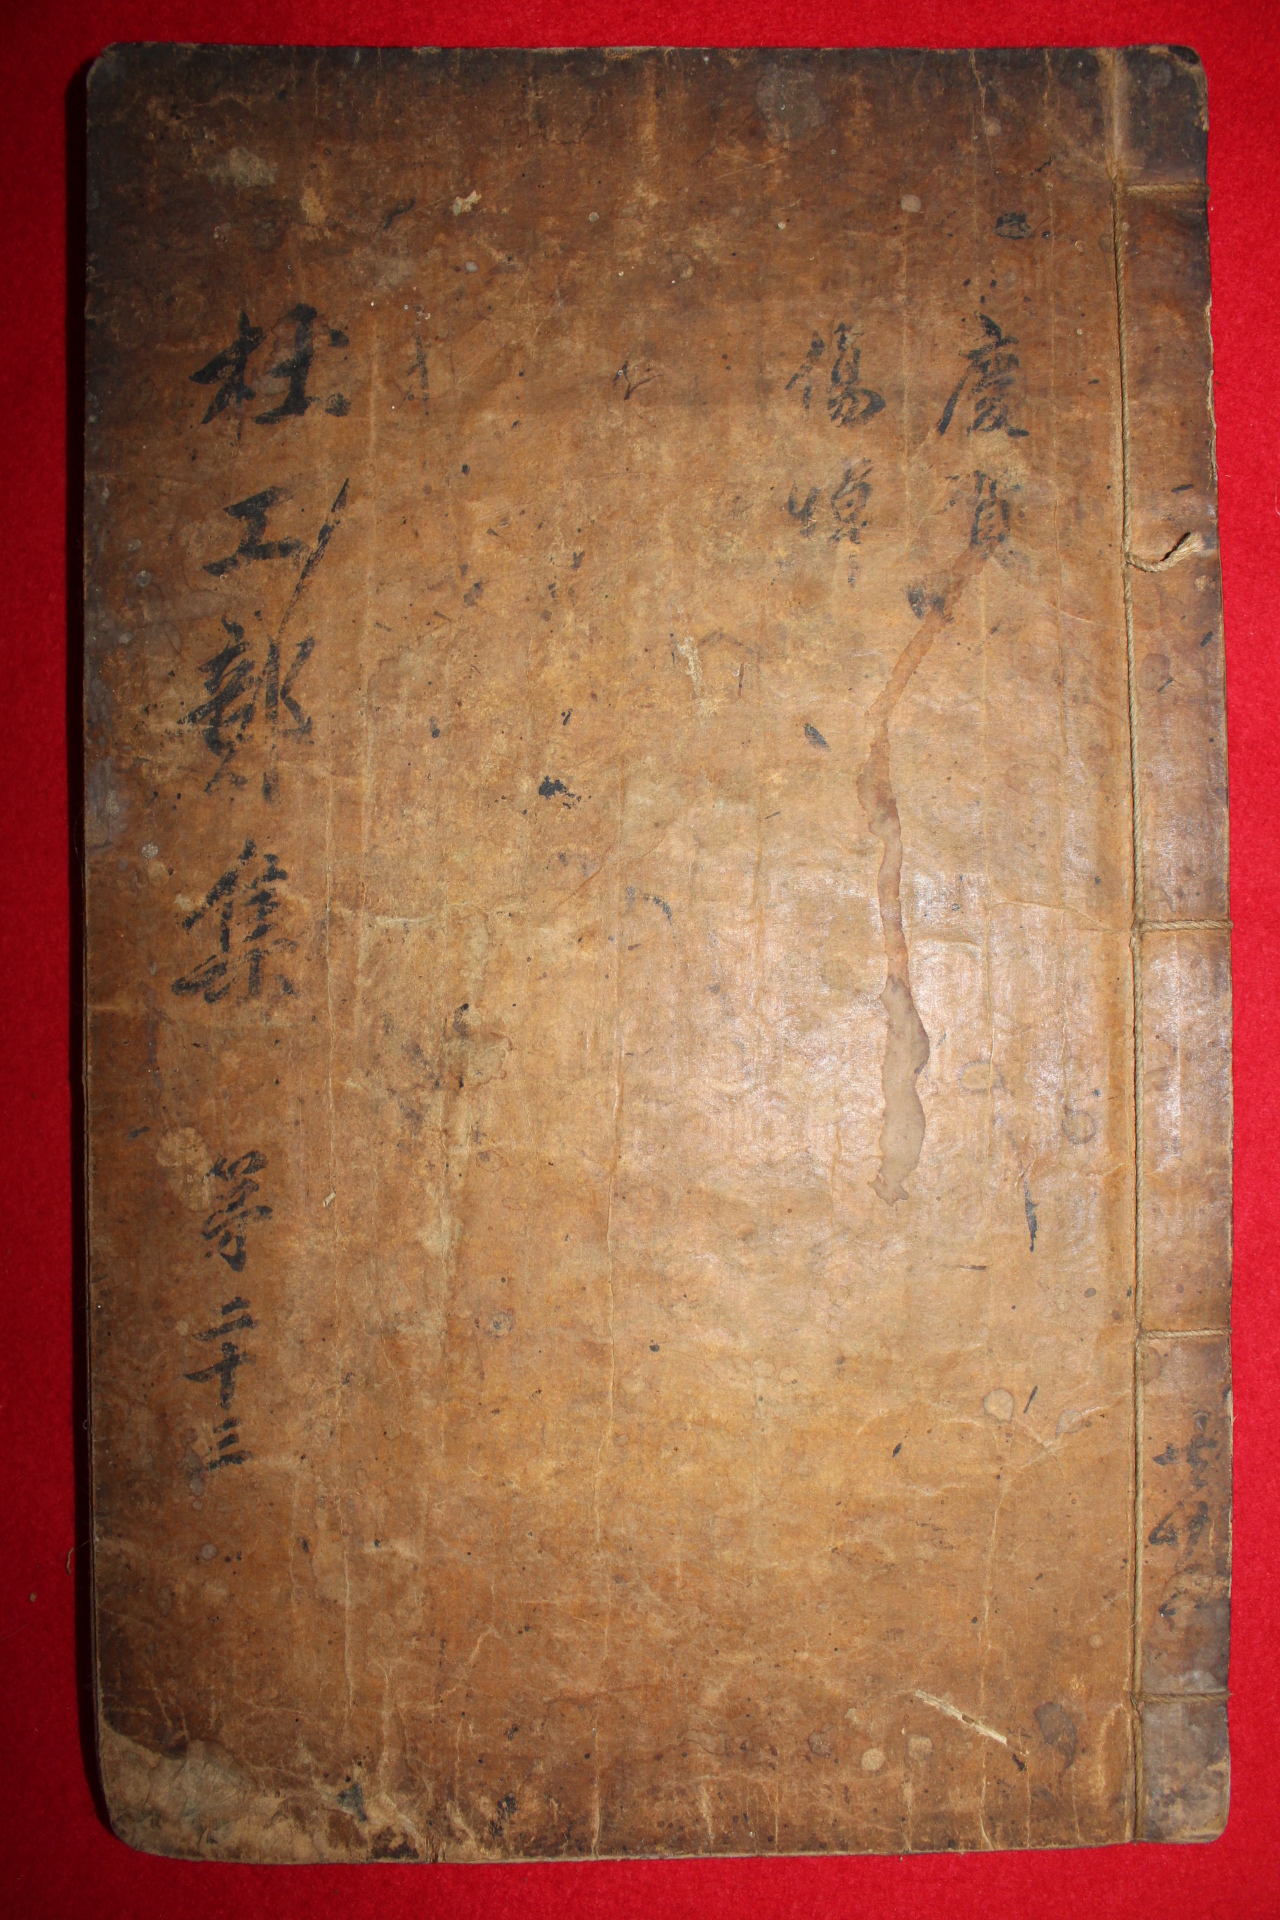 1500년대 금속활자본(초주갑인자) 두보(杜甫) 찬주분류두시(纂註分類杜詩)권24  1책